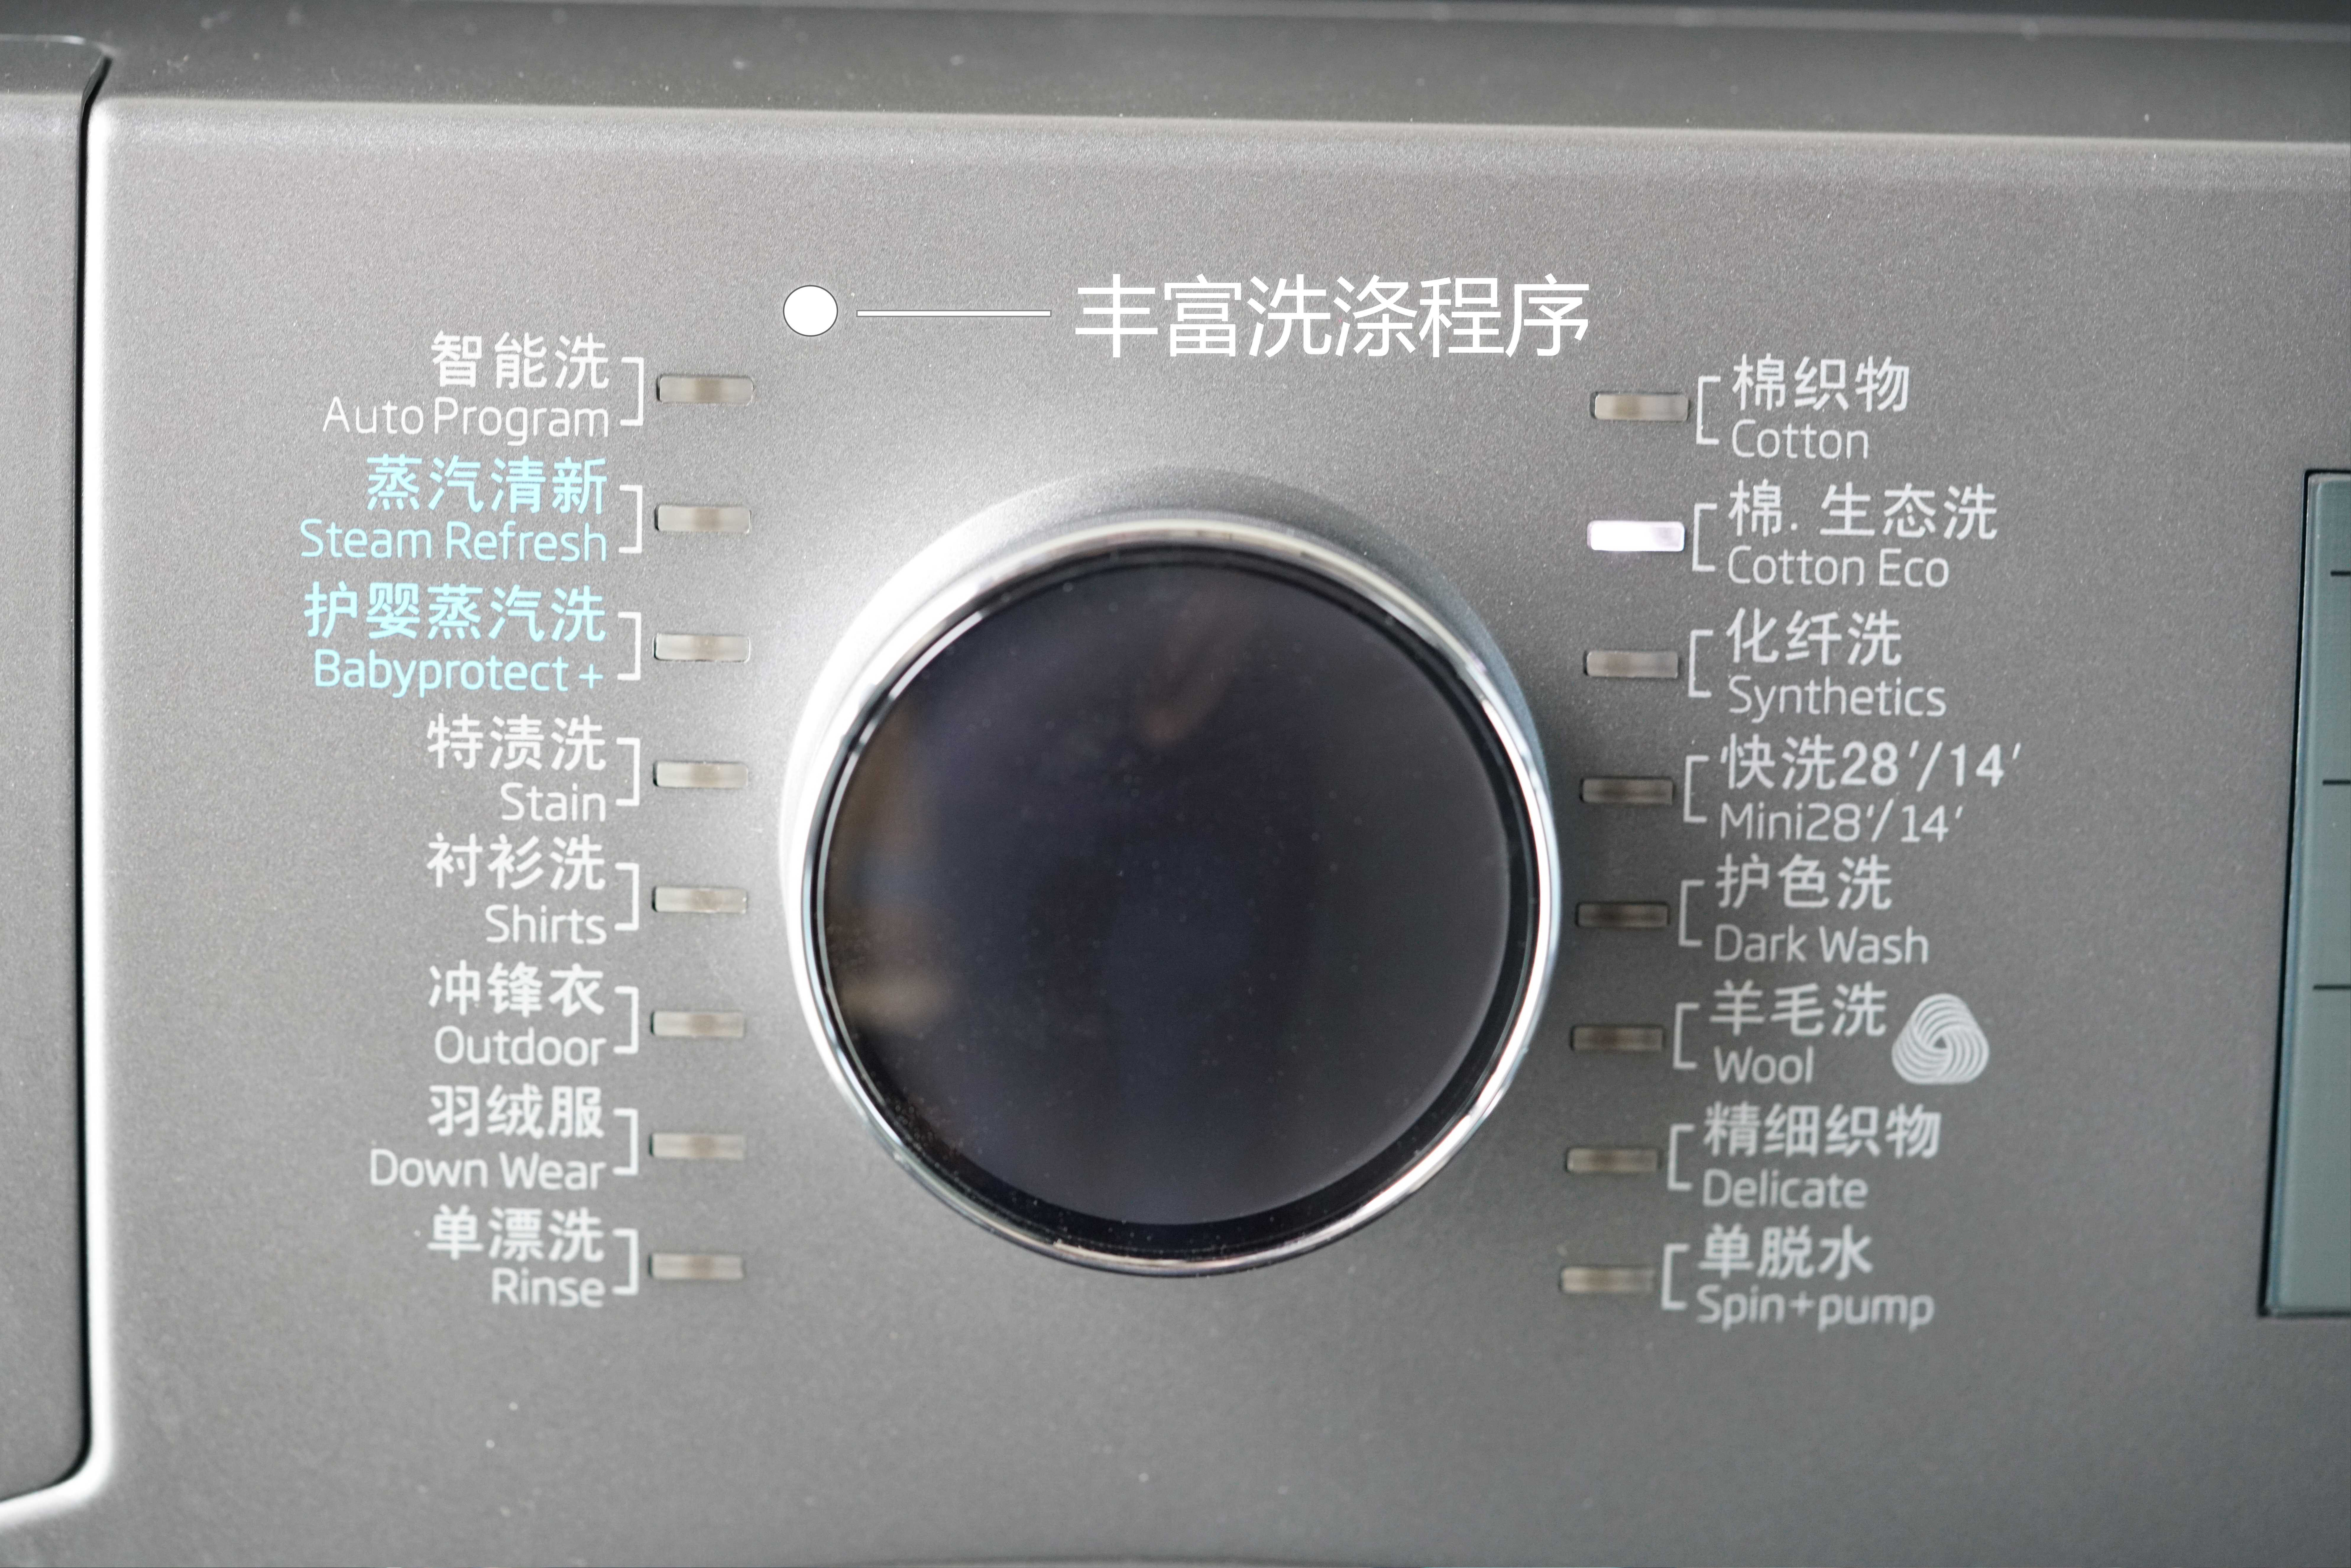 beko洗衣机使用说明图图片